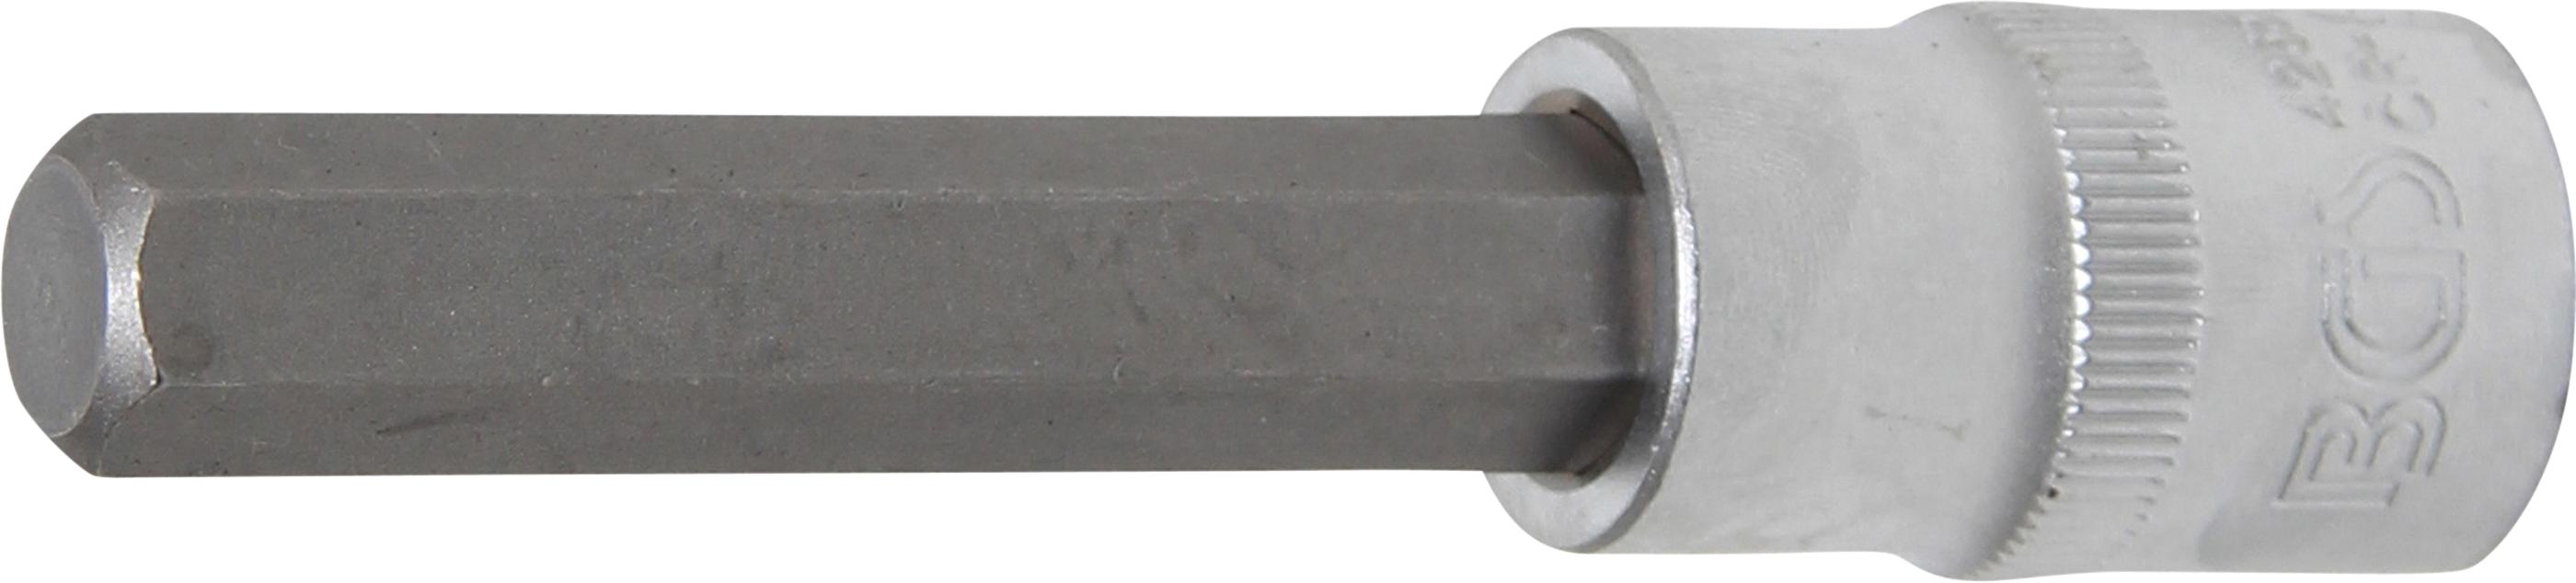 Bit Socket | length 100 mm | 12.5 mm (1/2") Drive | internal Hexagon 12 mm (4265)